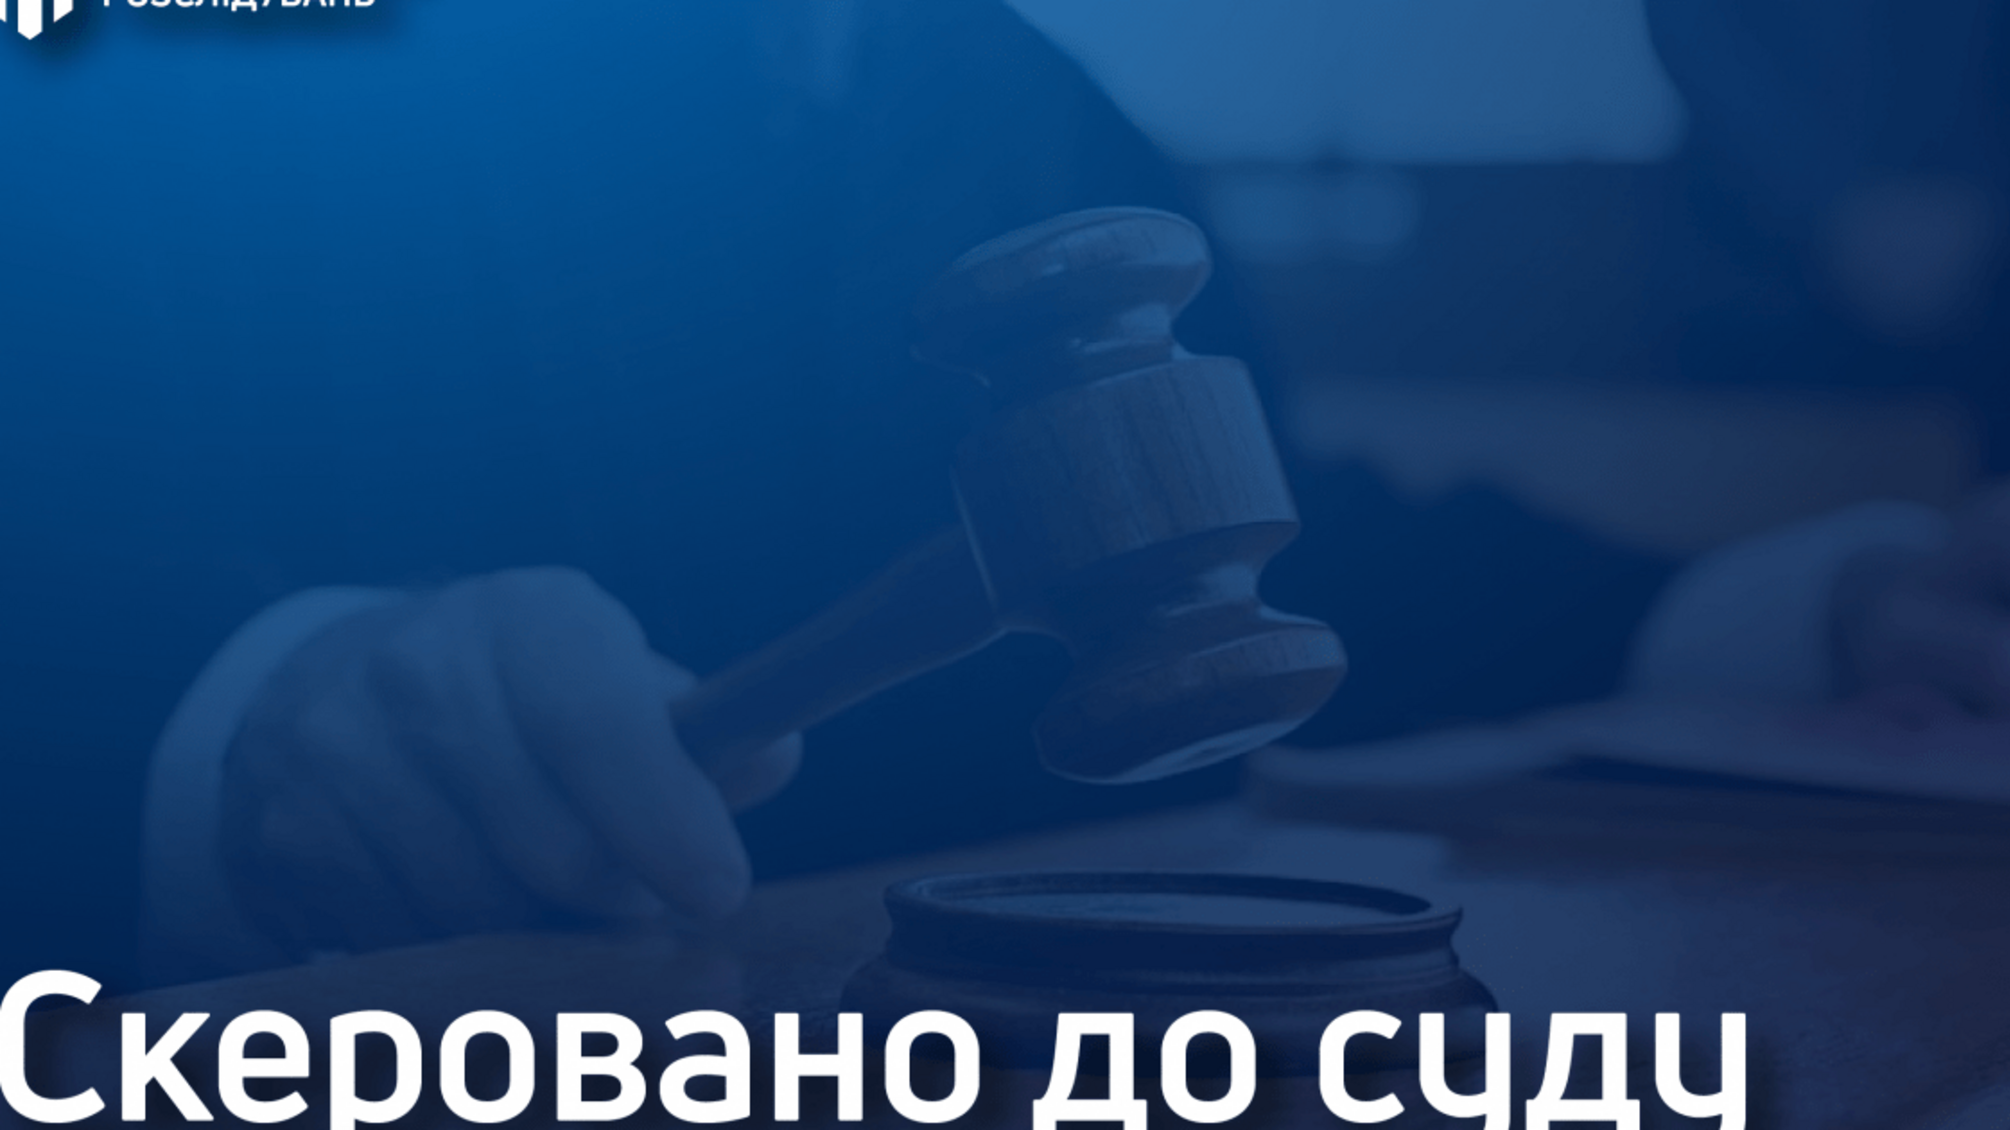 Двоє митників Житомирщини постануть перед судом через заниження митних платежів на понад 2 мільйони гривень